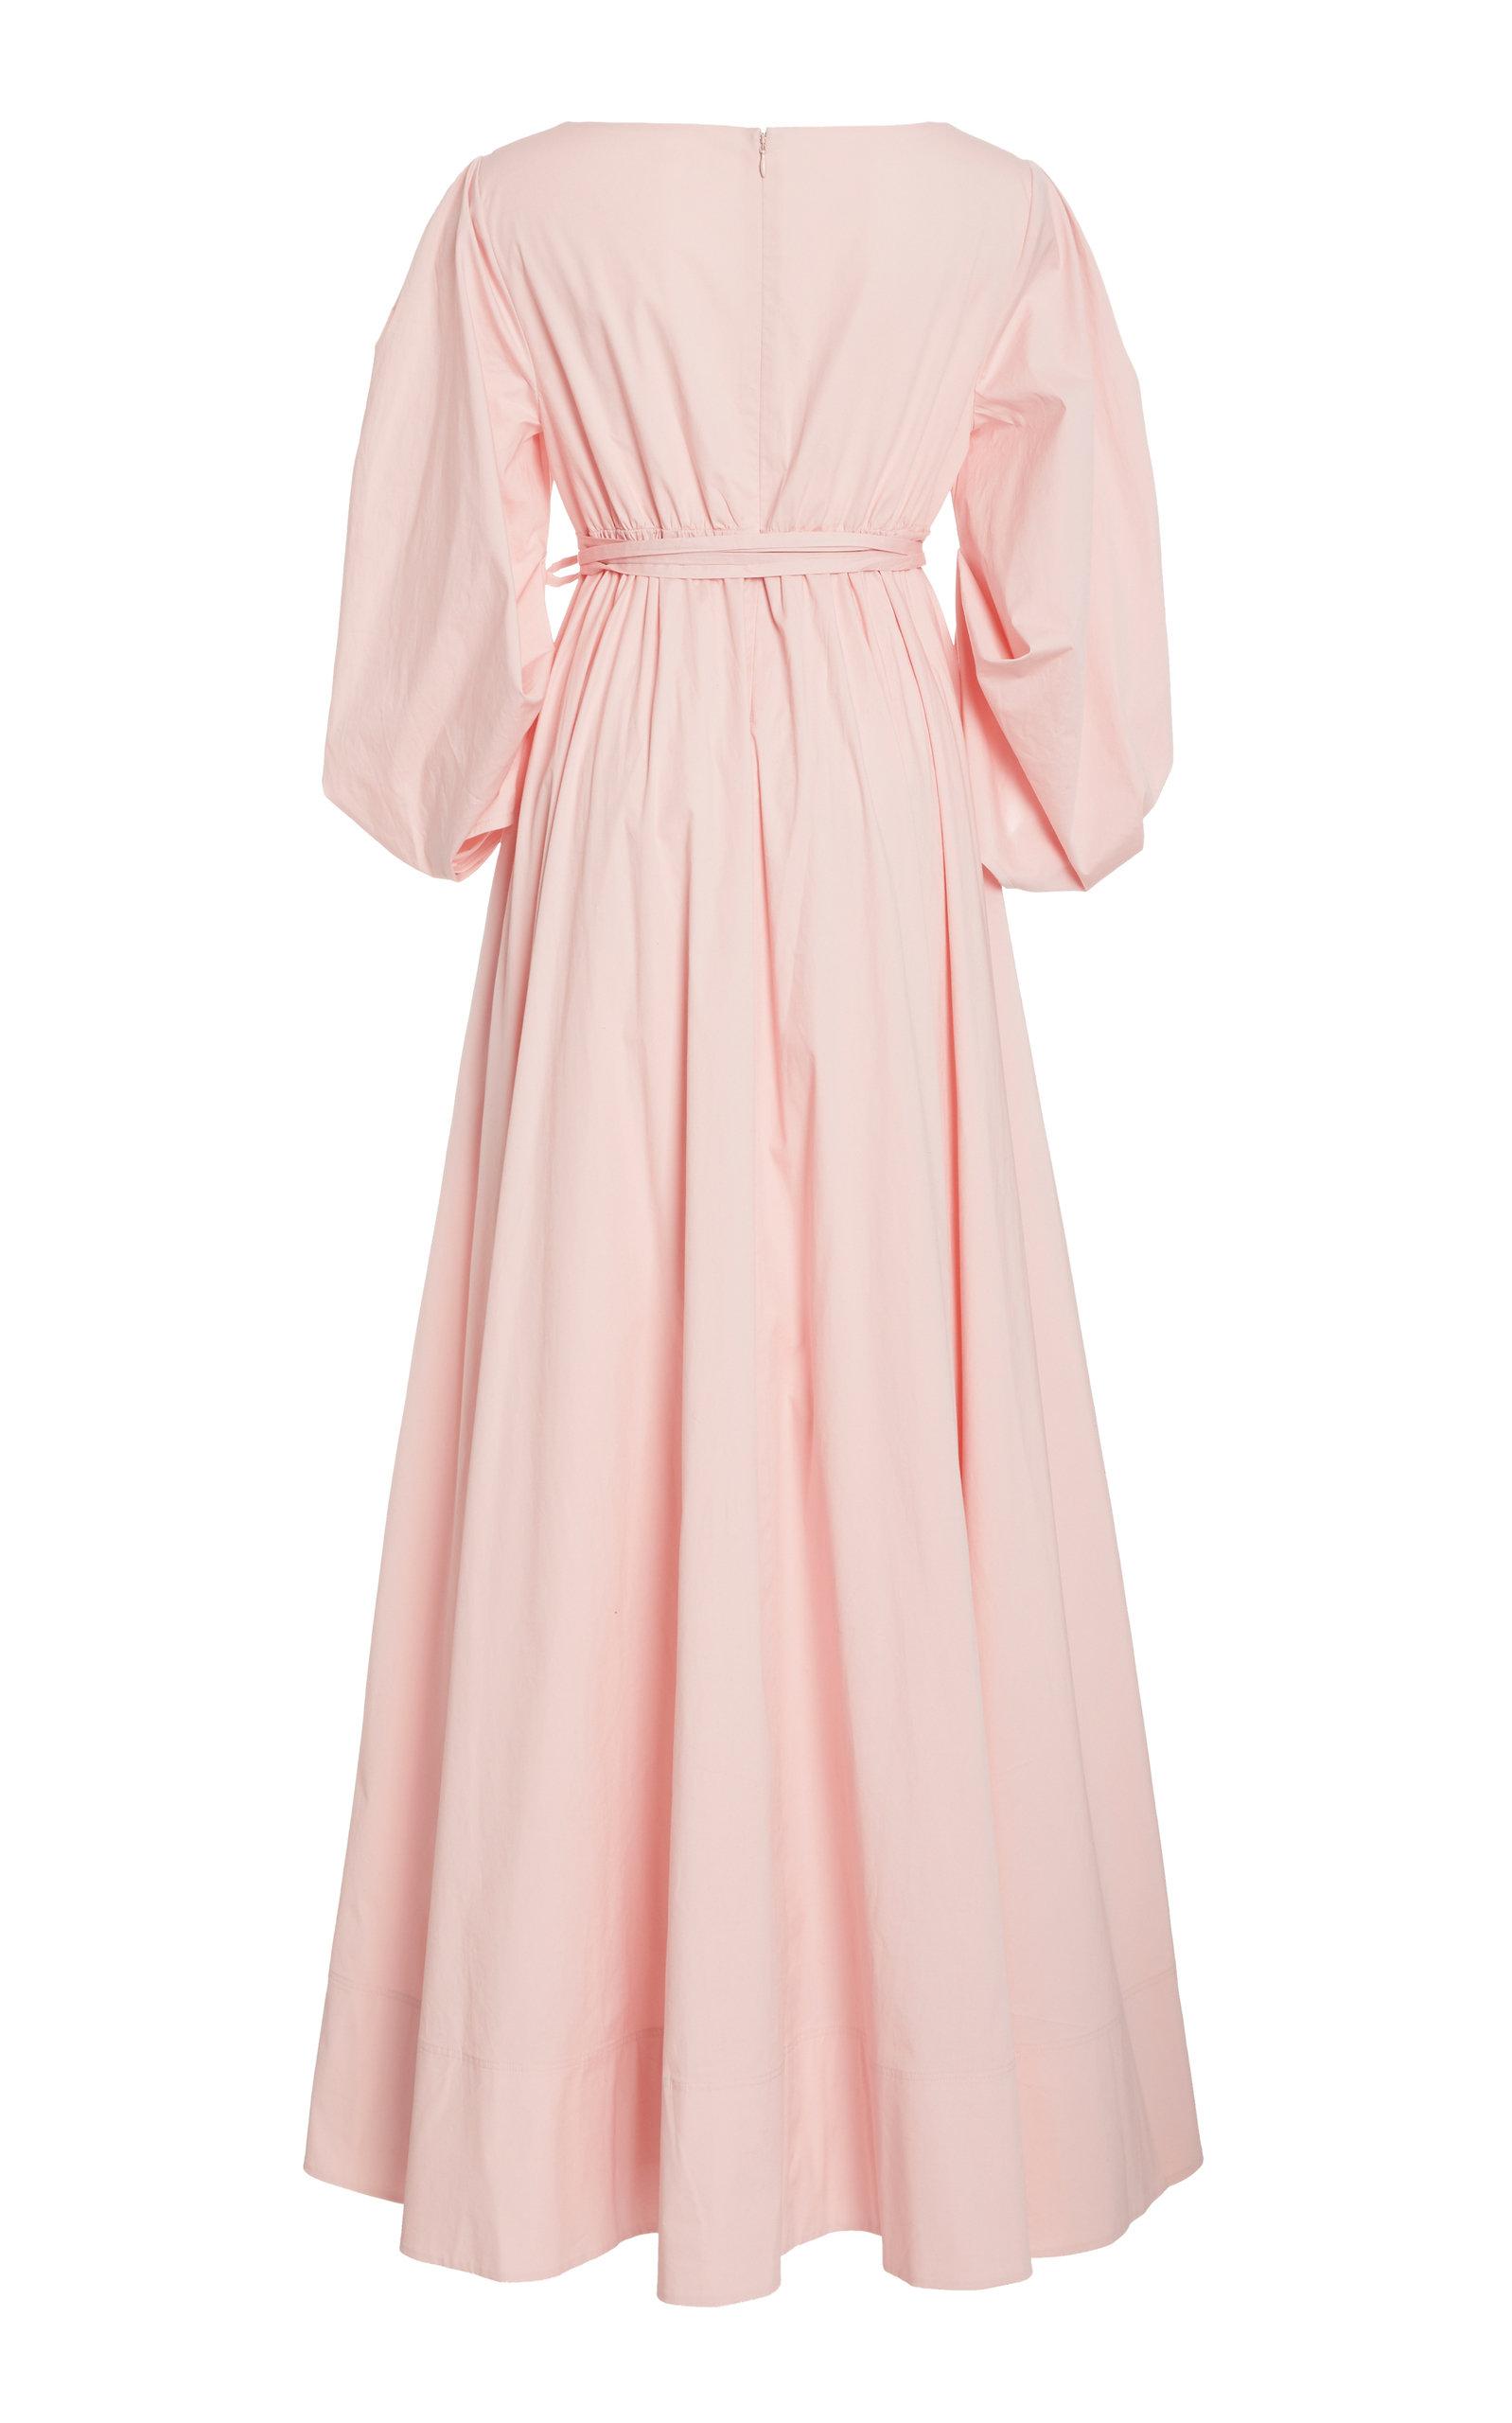 STAUD Cotton Juliette 3/4 Puff Dress in Pink - Lyst